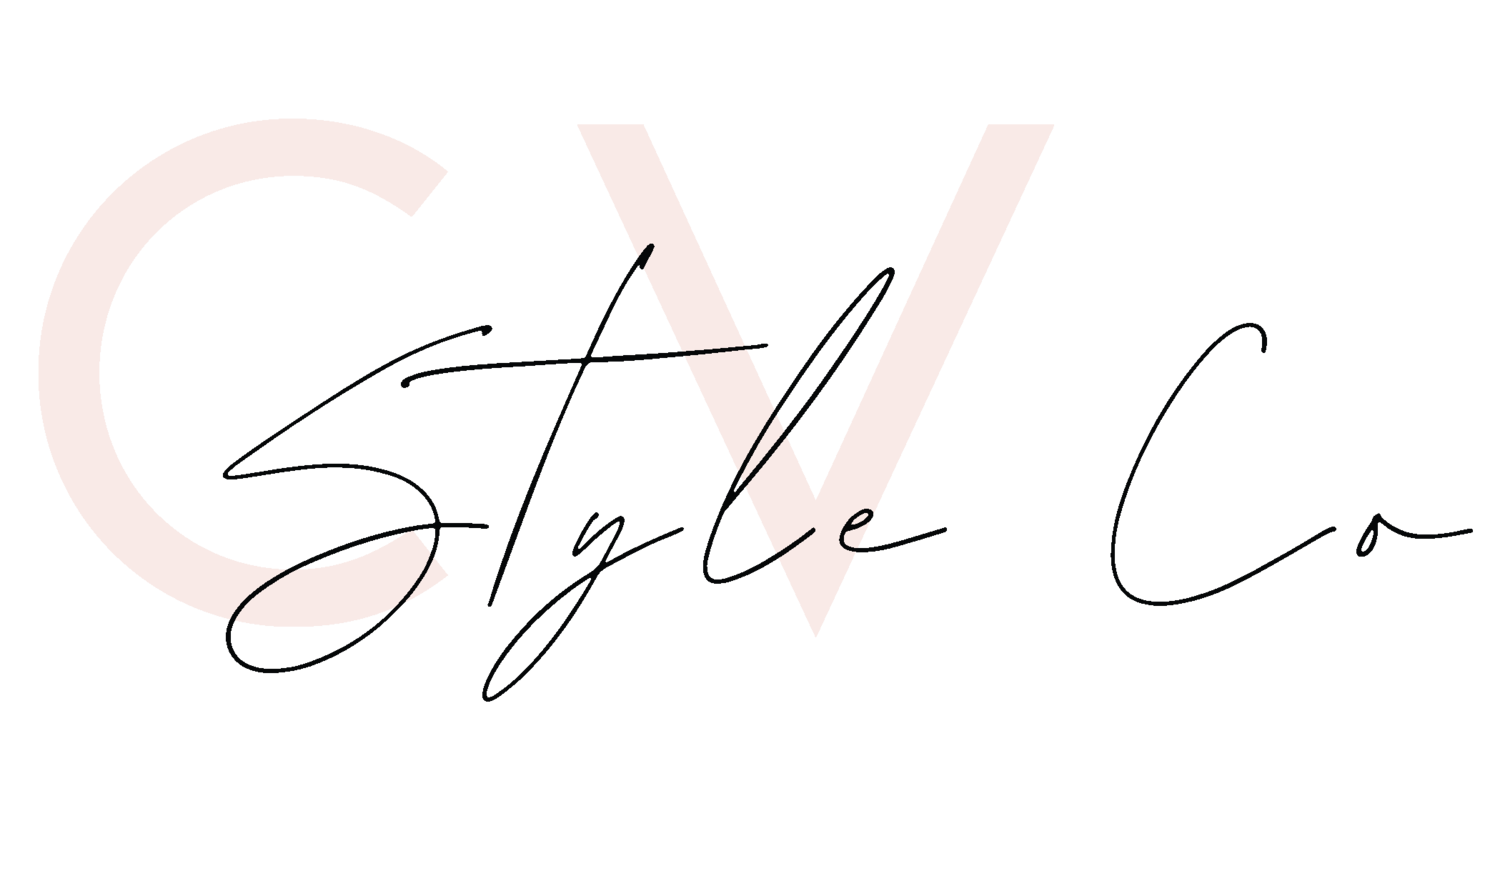 CV Style Co